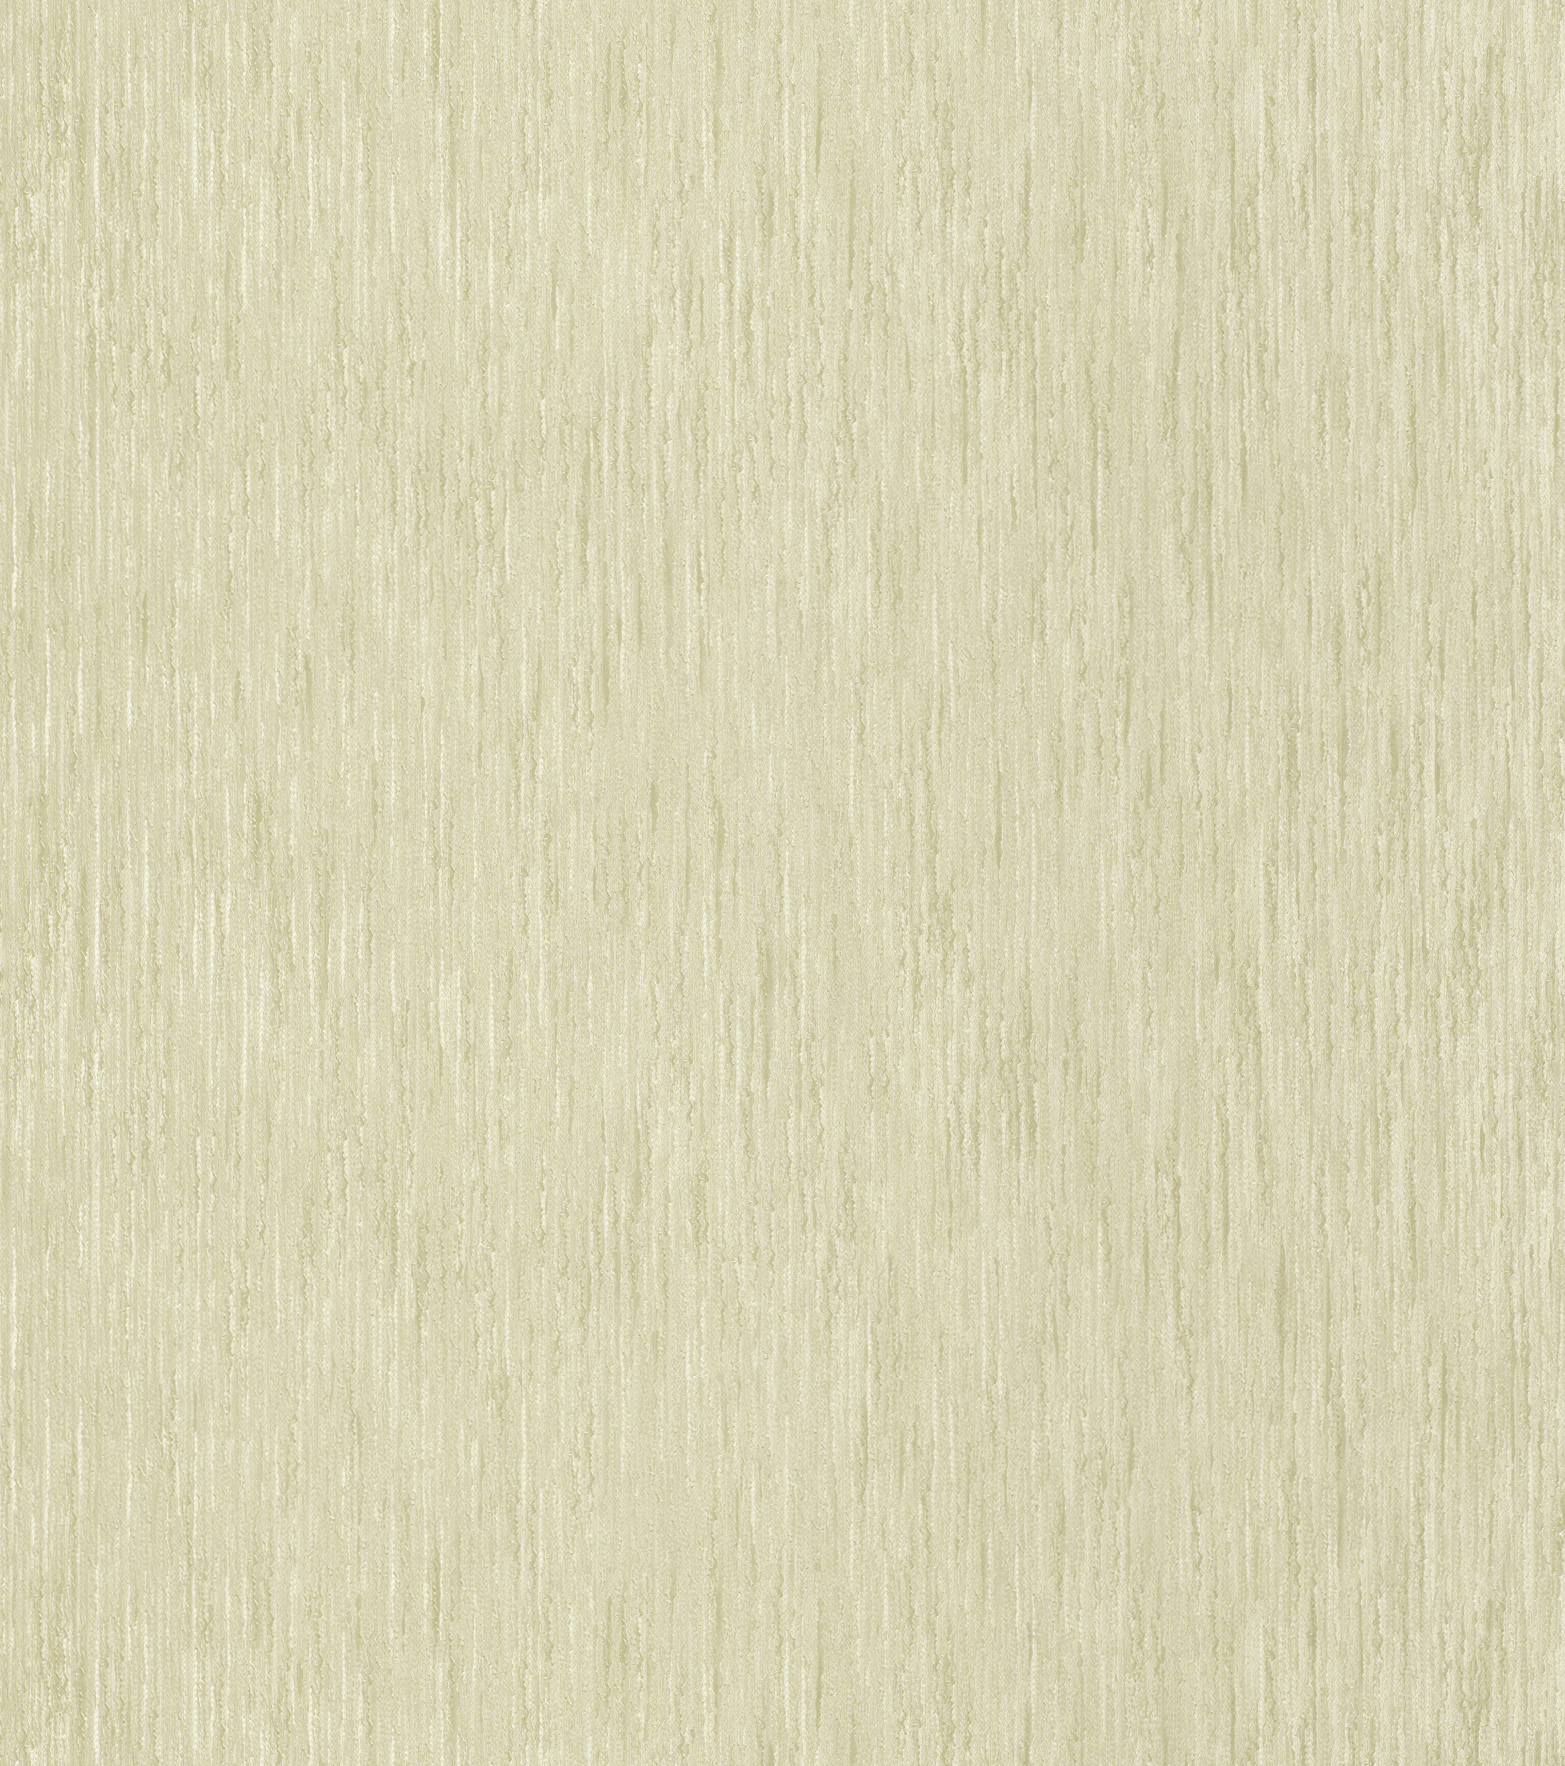 Klasszikus beige színű uni tapéta